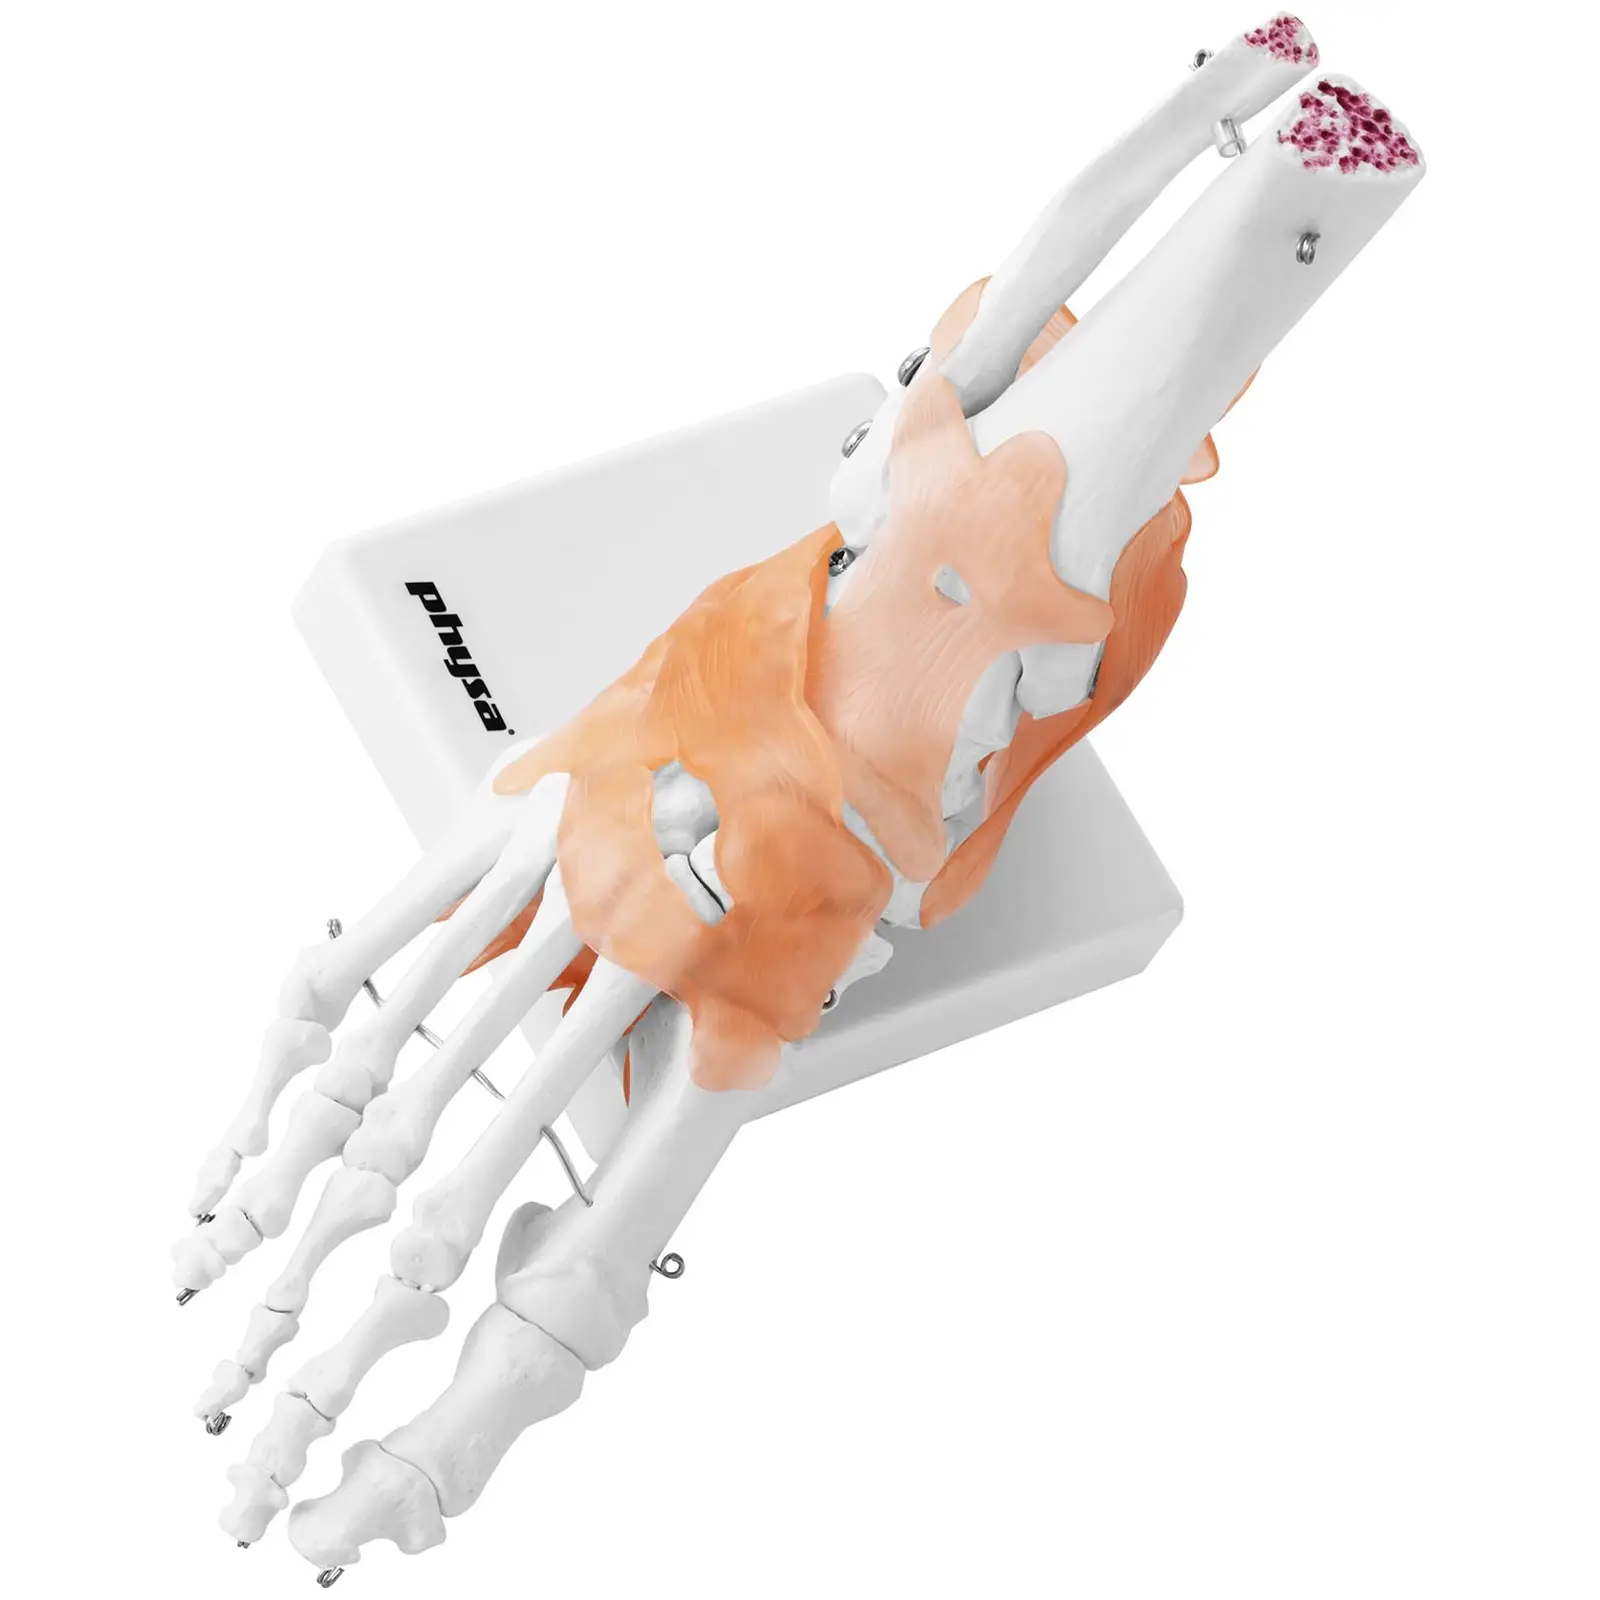 Fot - Anatomisk modell